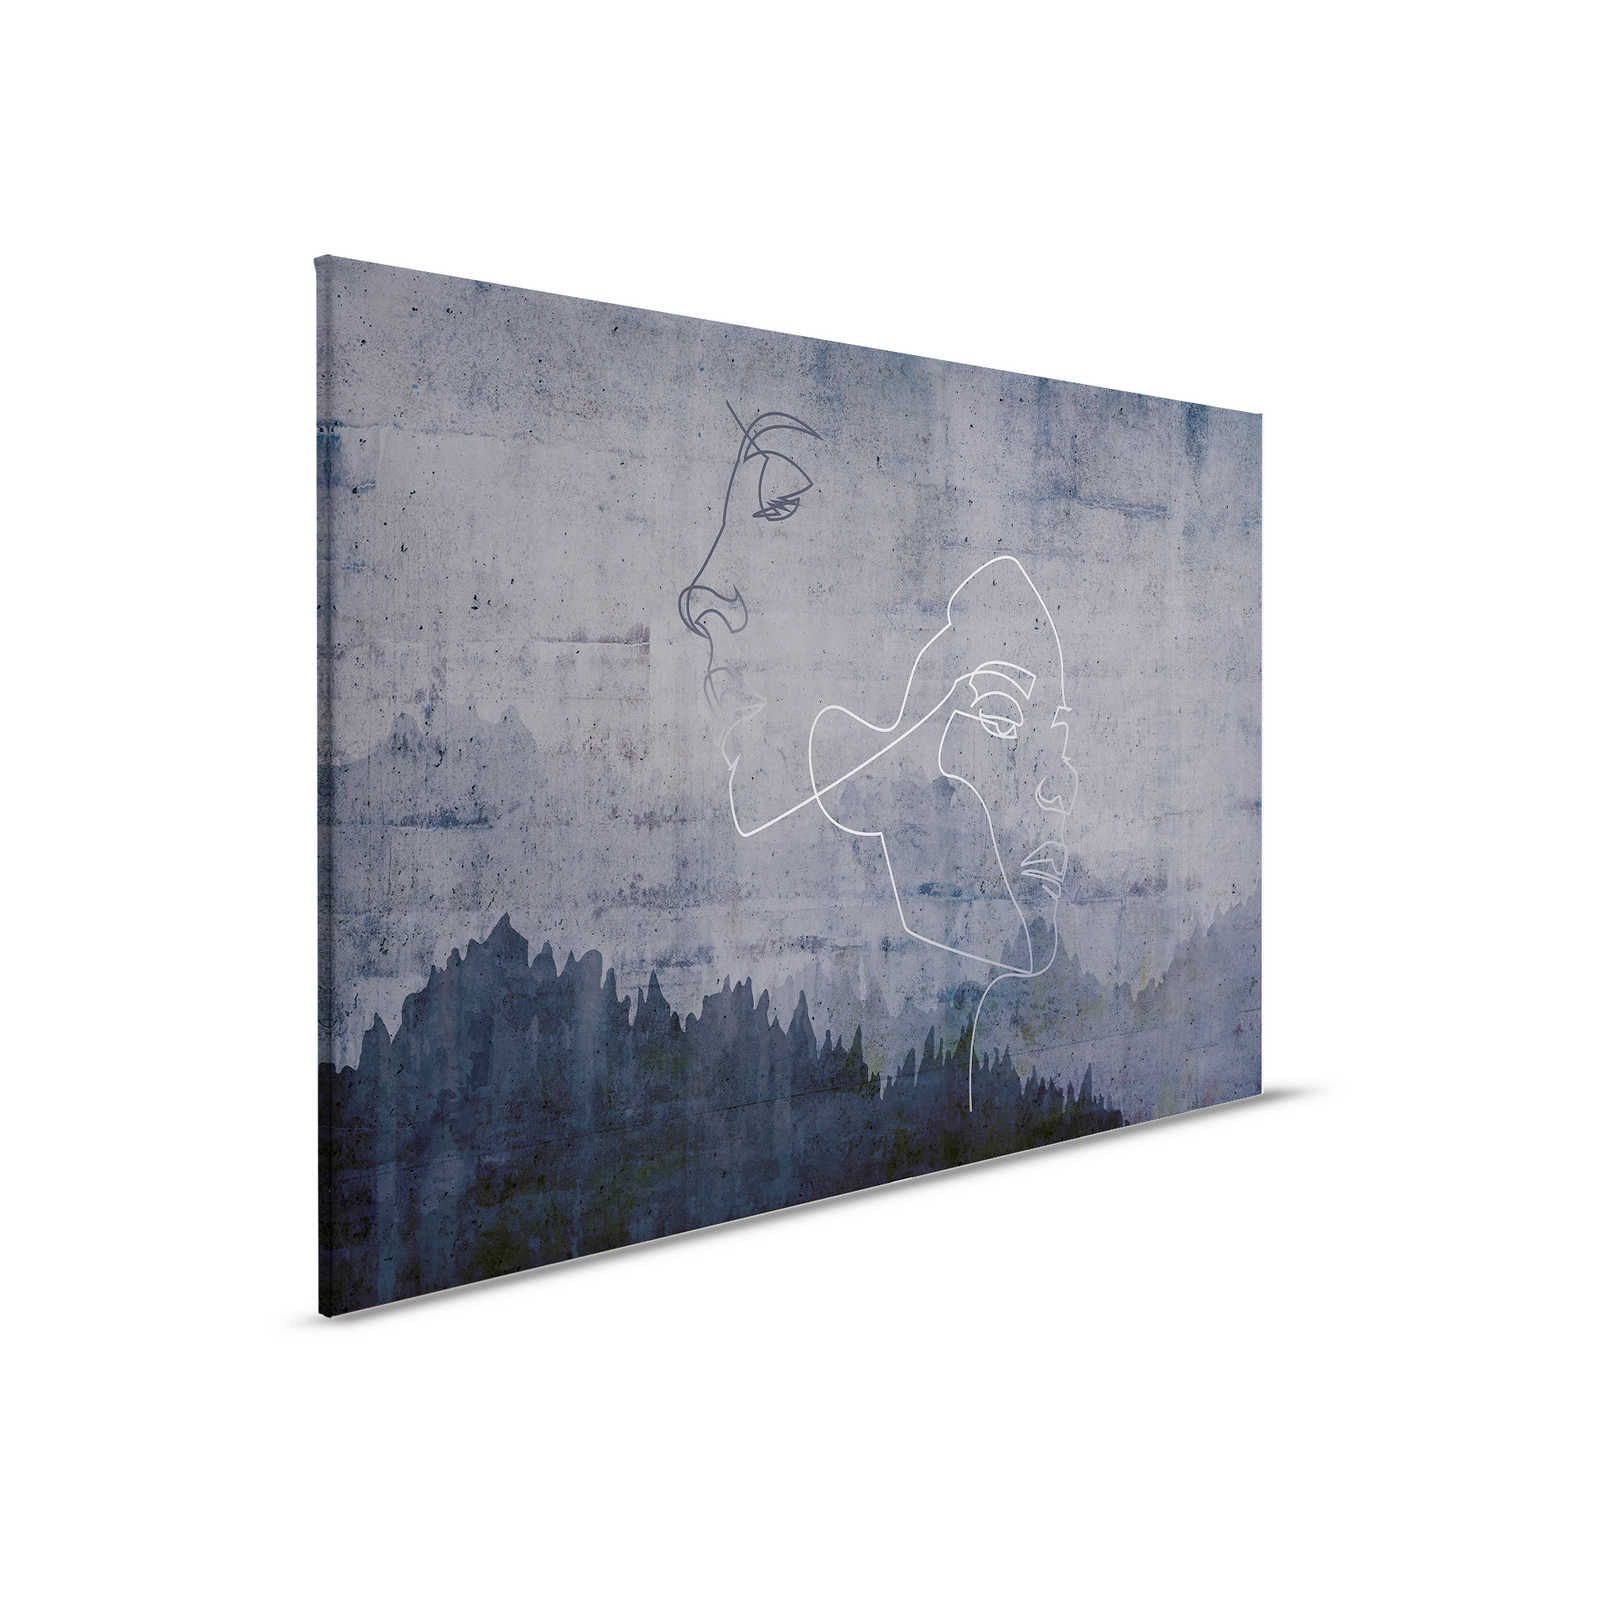 Quadro su tela antracite effetto cemento e linee d'argento - 0,90 m x 0,60 m
